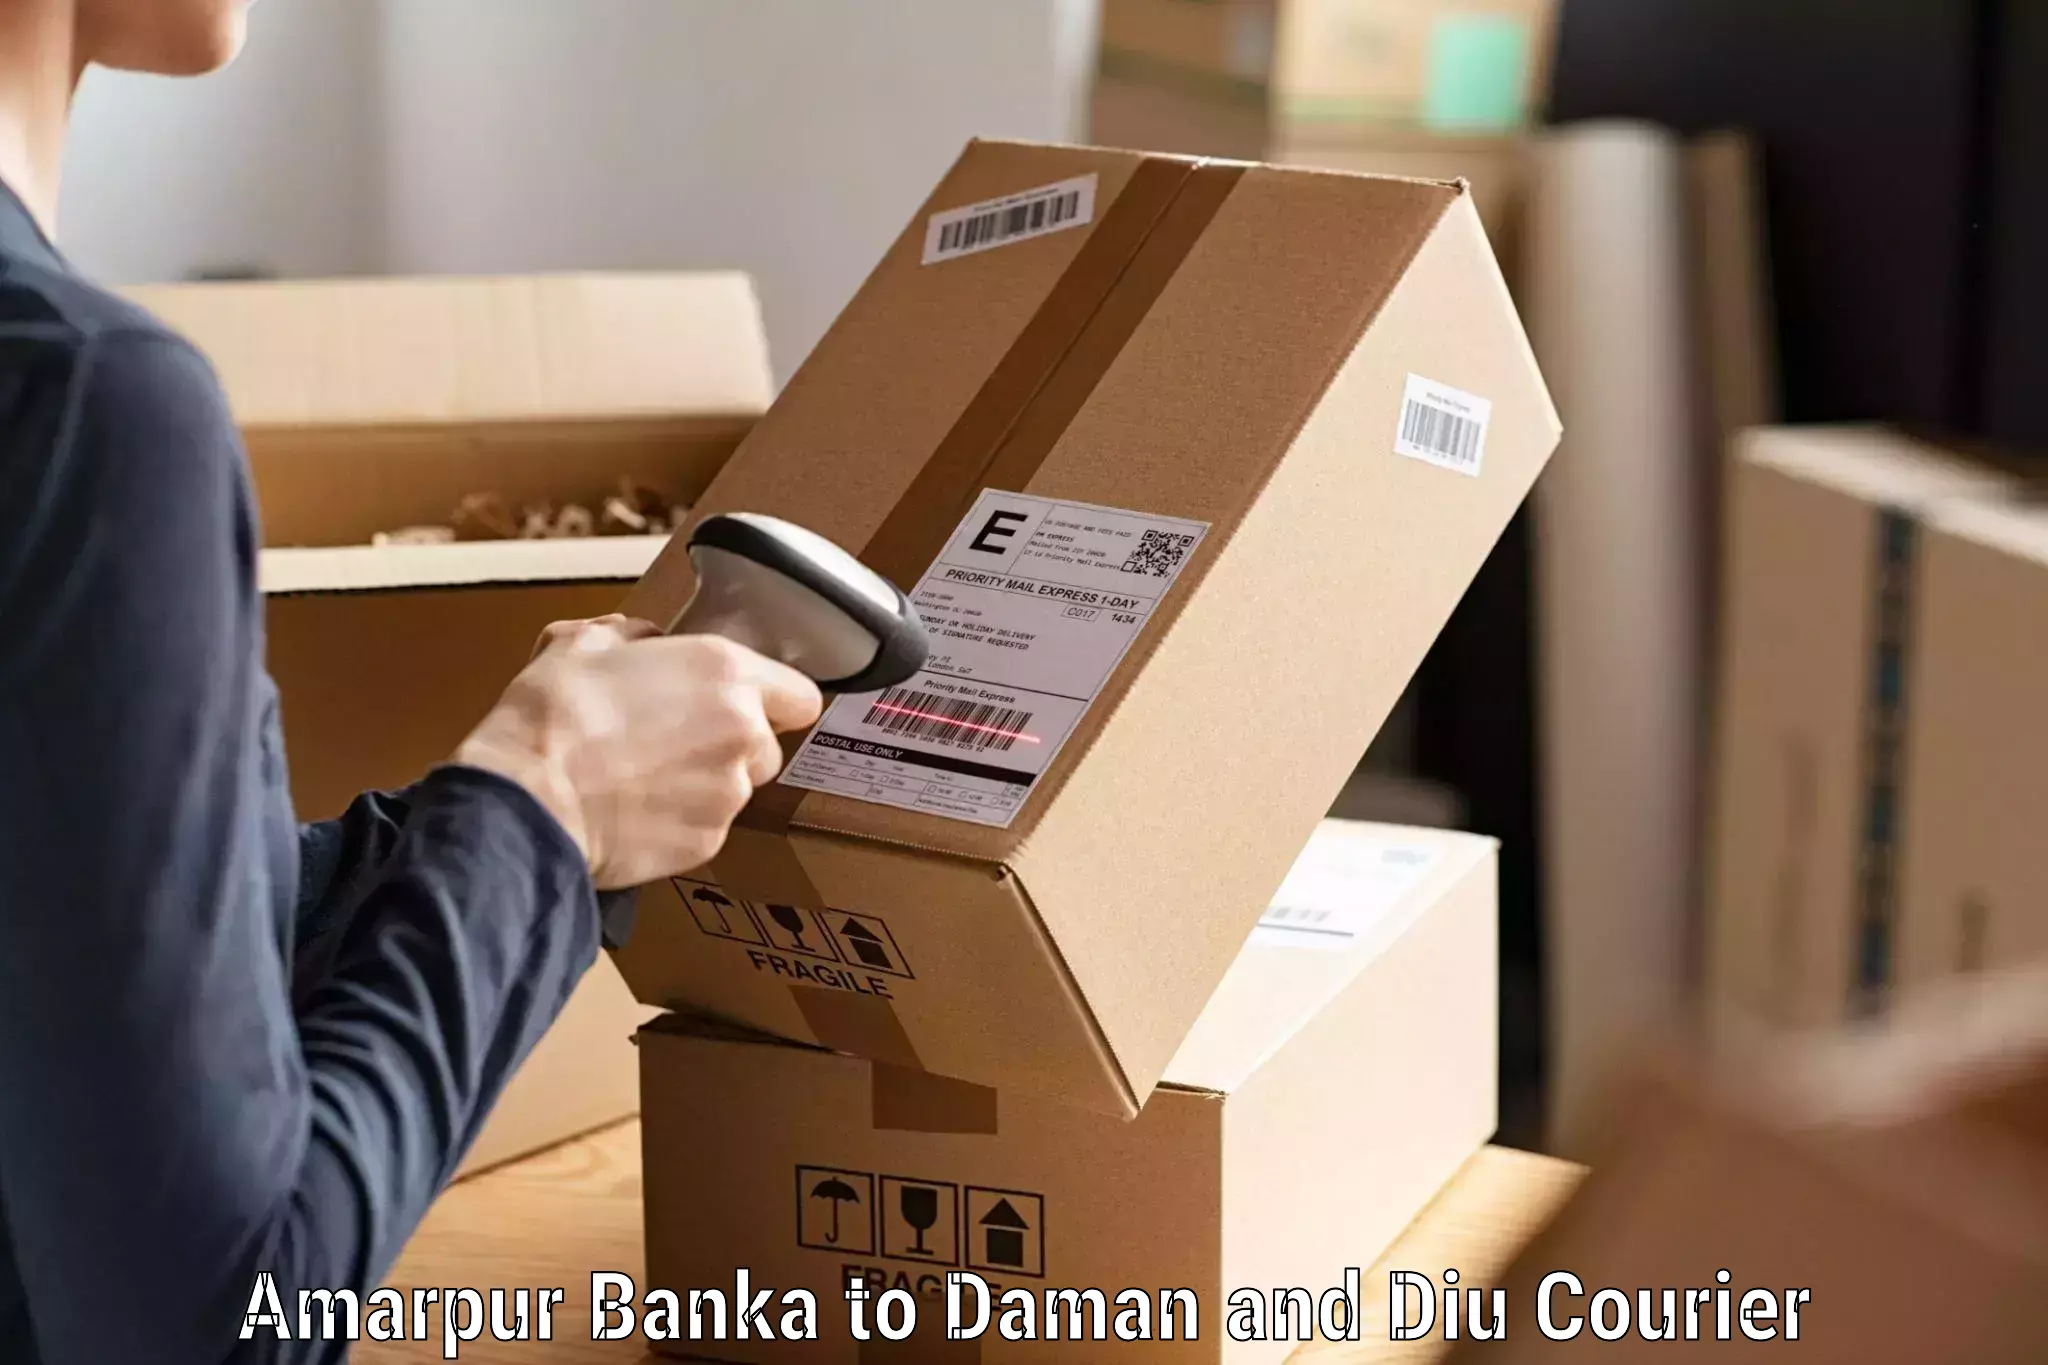 Express mail service Amarpur Banka to Daman and Diu